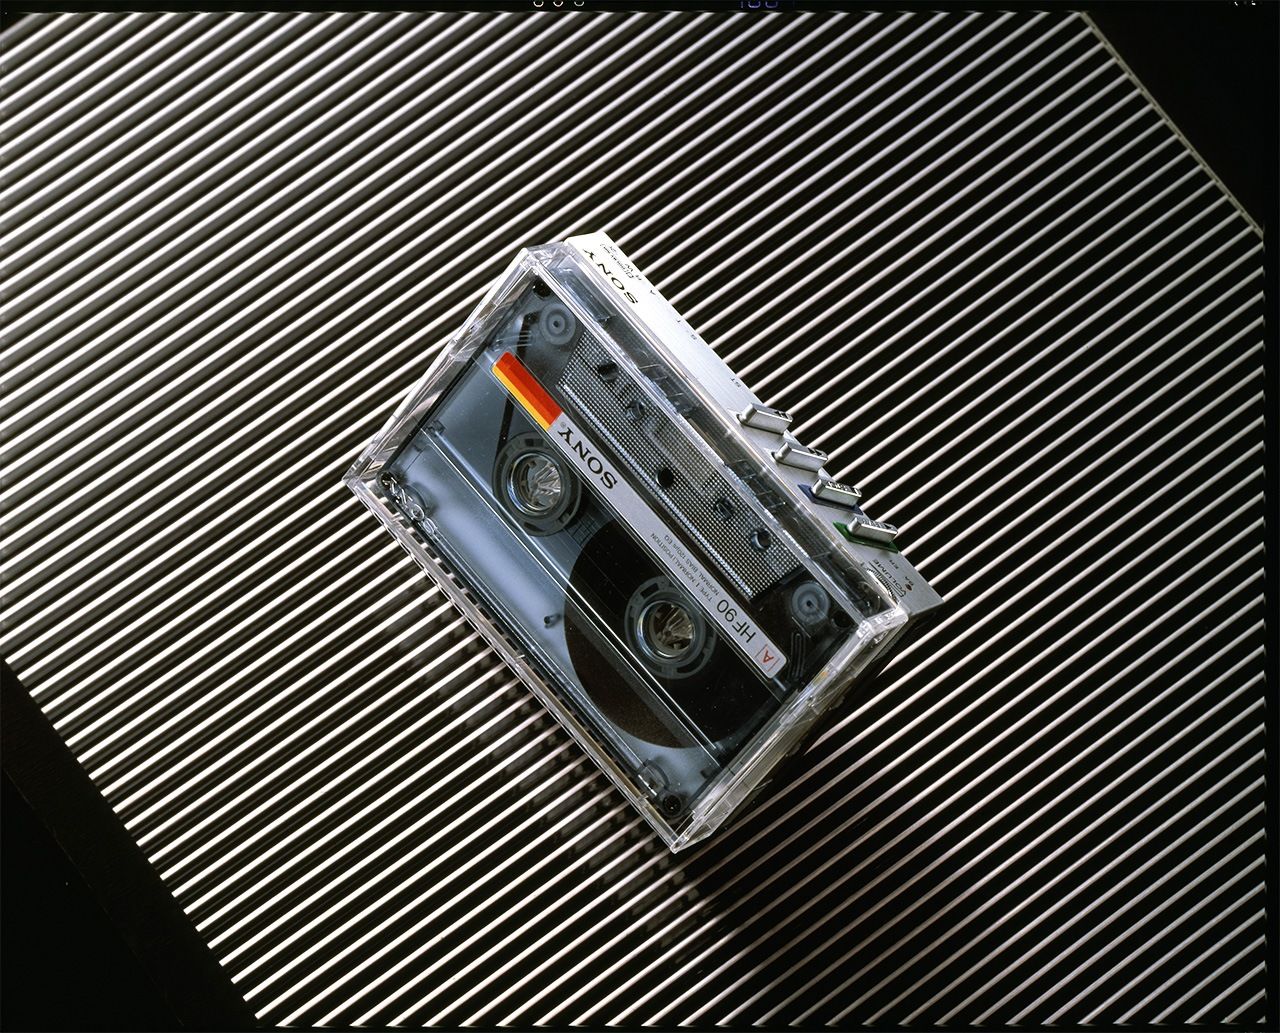 Walkman, который удалось сделать компактным, как футляр аудиокассеты - модель WM-20, поступившая в продажу в 1983 году